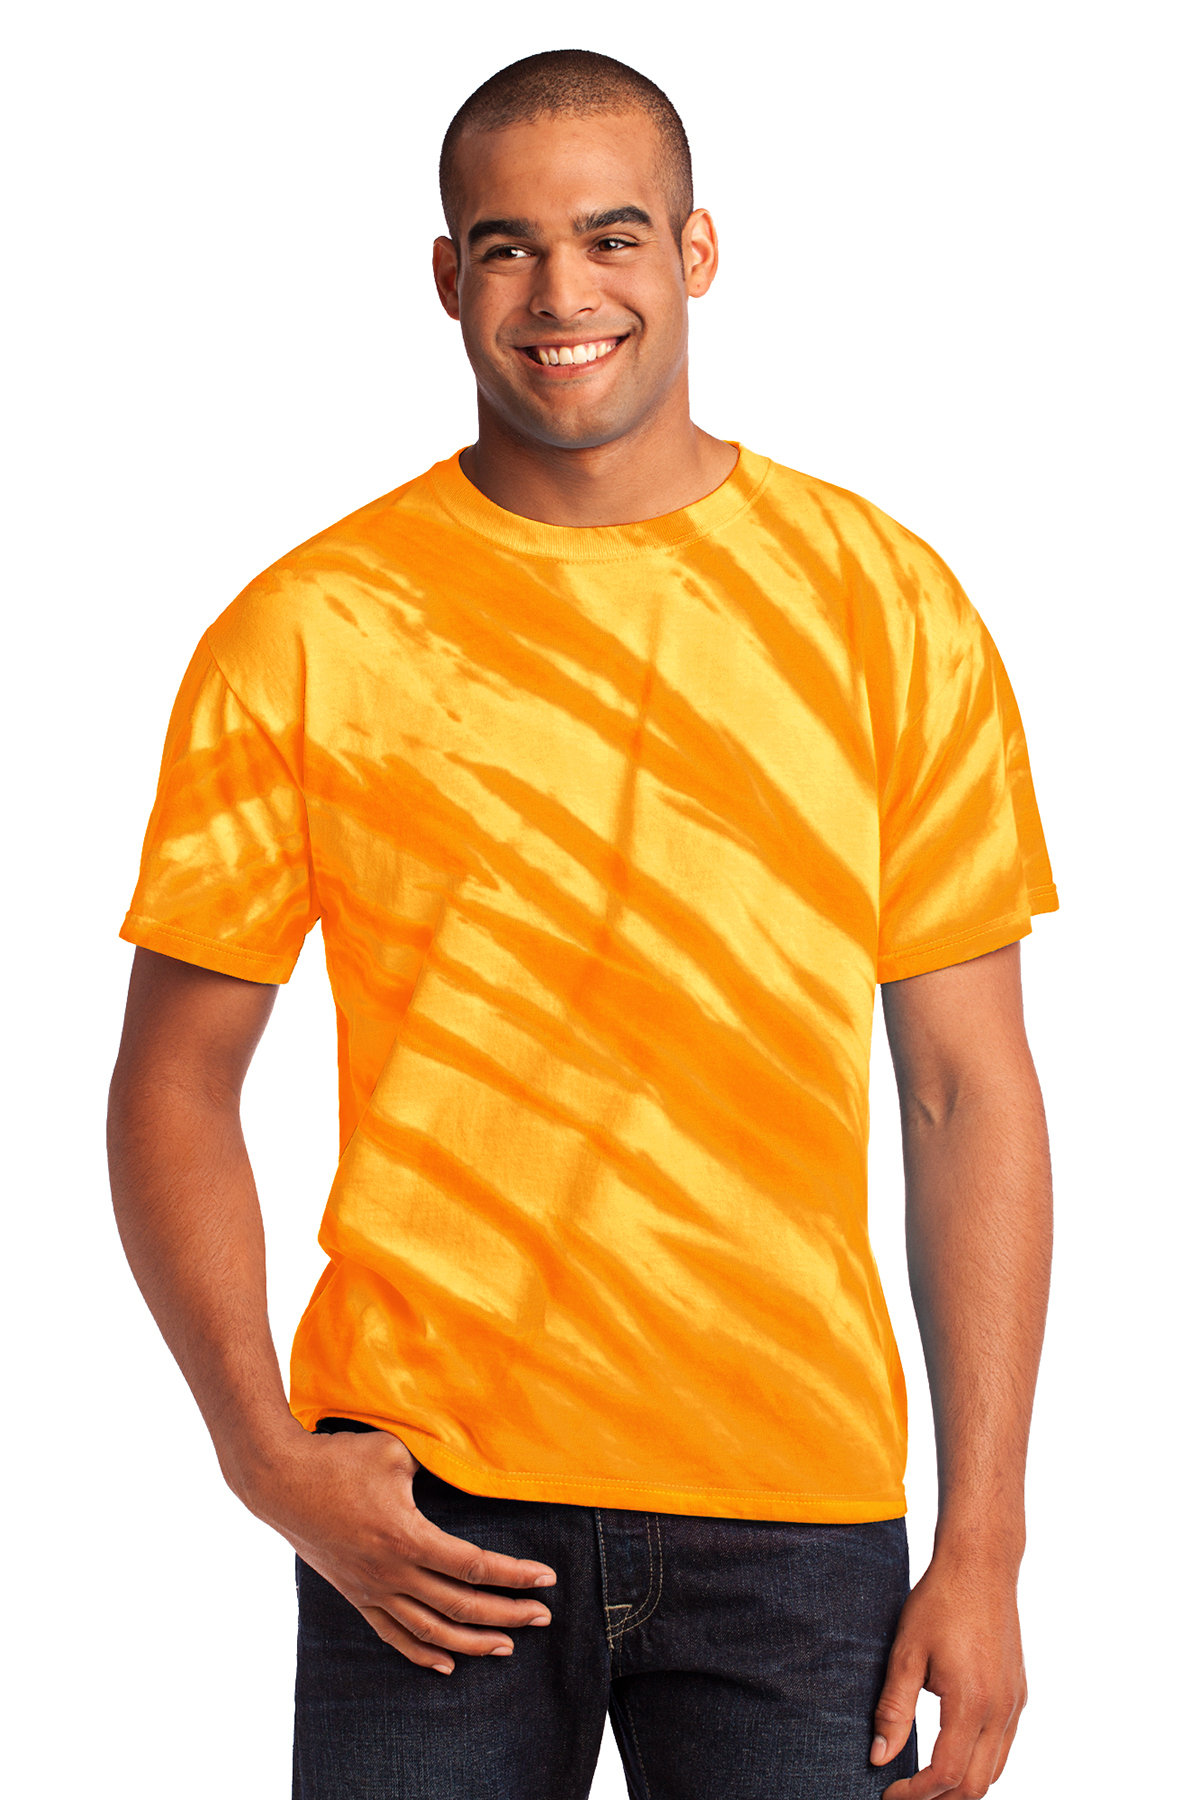 tiger tie dye shirt